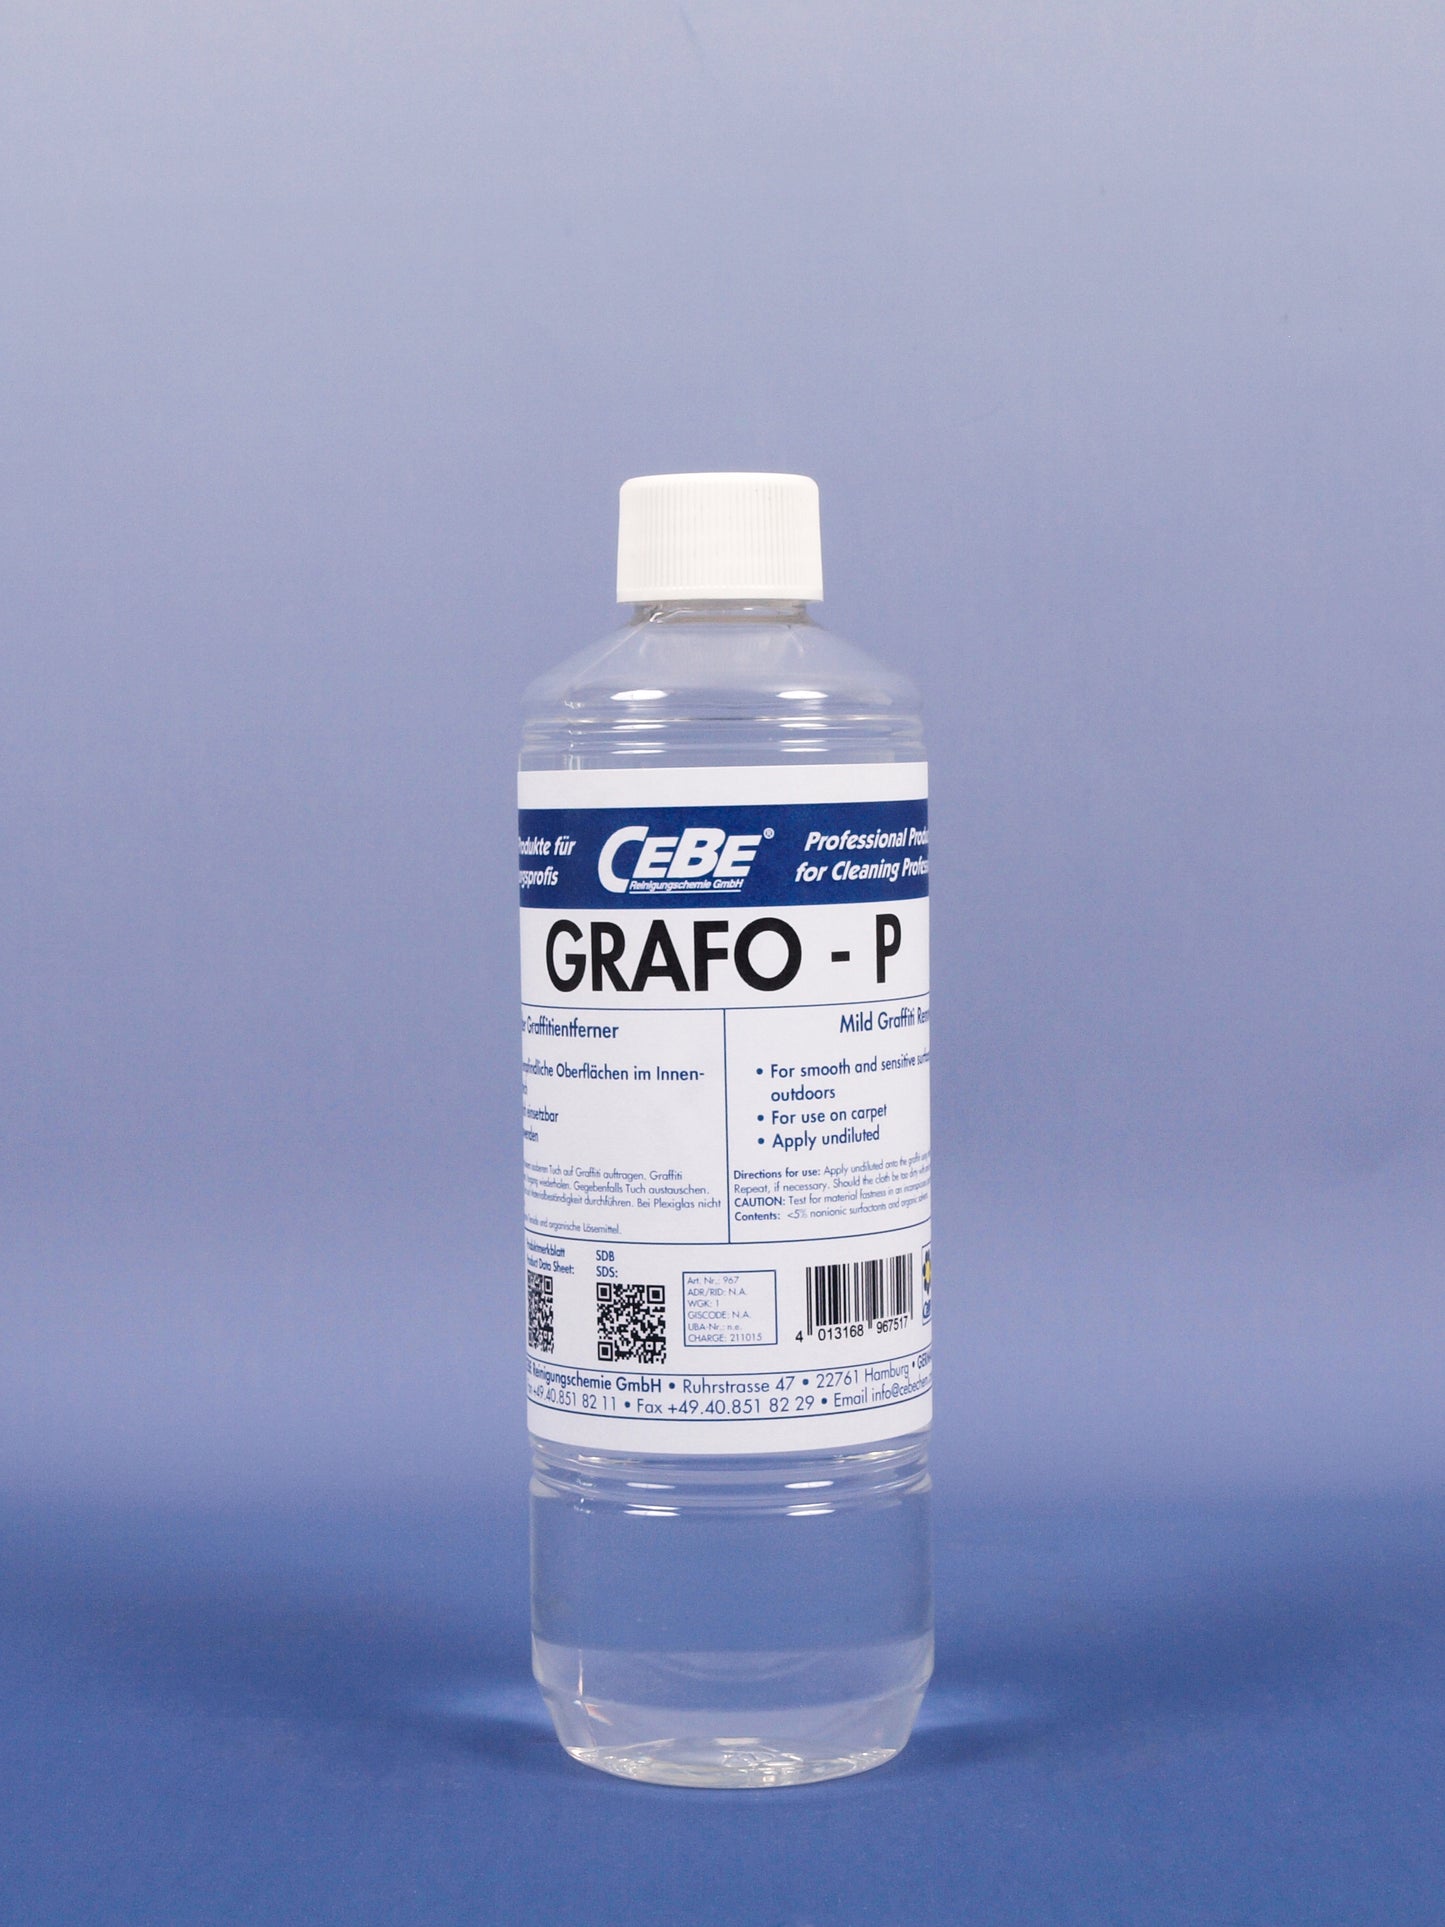 GRAFO - P